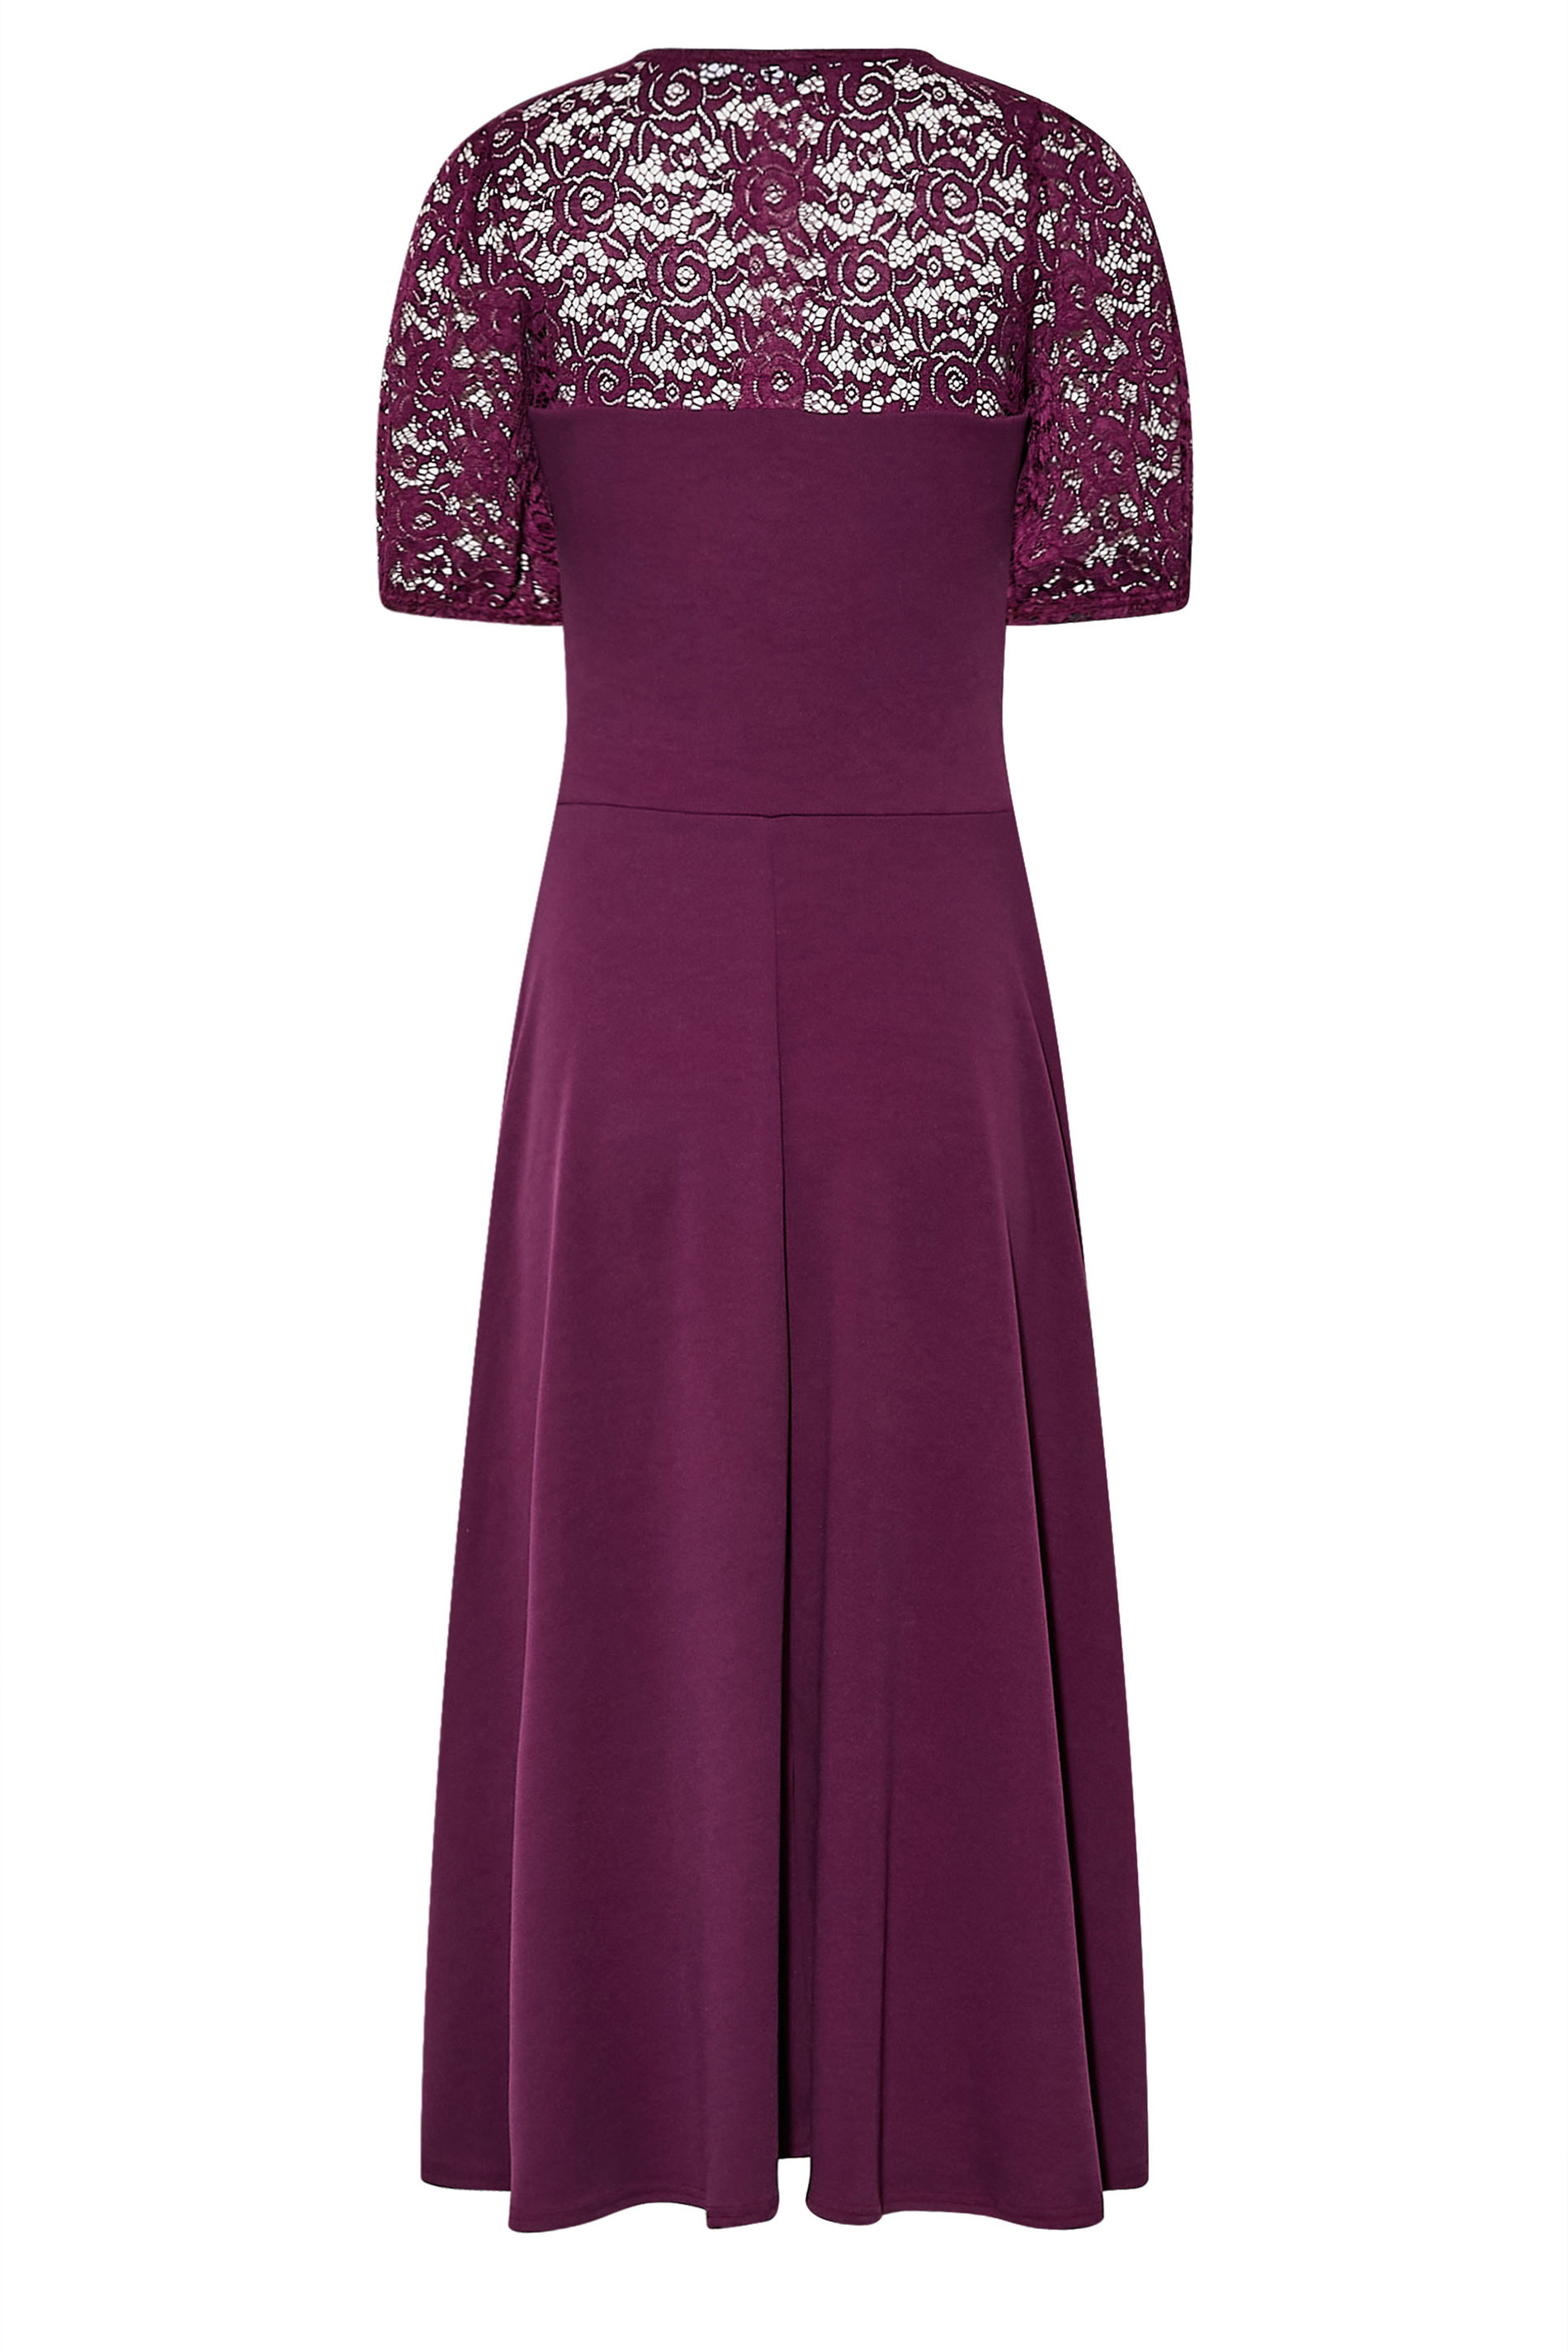 Tall Women's LTS Purple Lace Midi Dress | Long Tall Sally